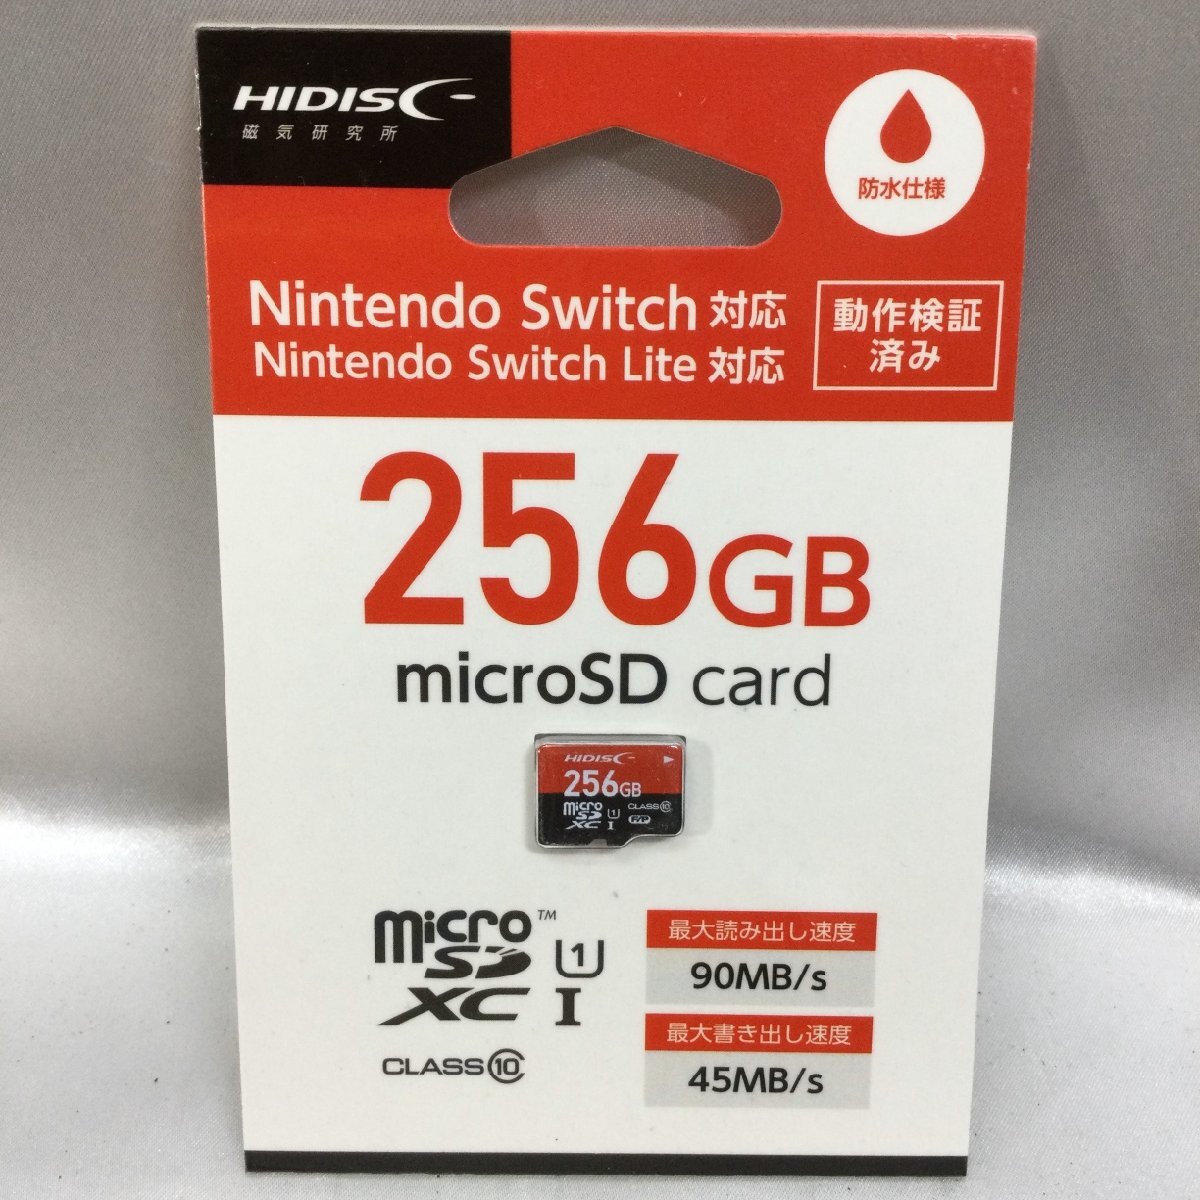 【未使用/インボイス登録店/TO】HIDISC Nintendo Switch ニンテンドースイッチ対応 256GB micro SDXCカード HDMCSDX256GSW MZ0403/0008-3の画像1